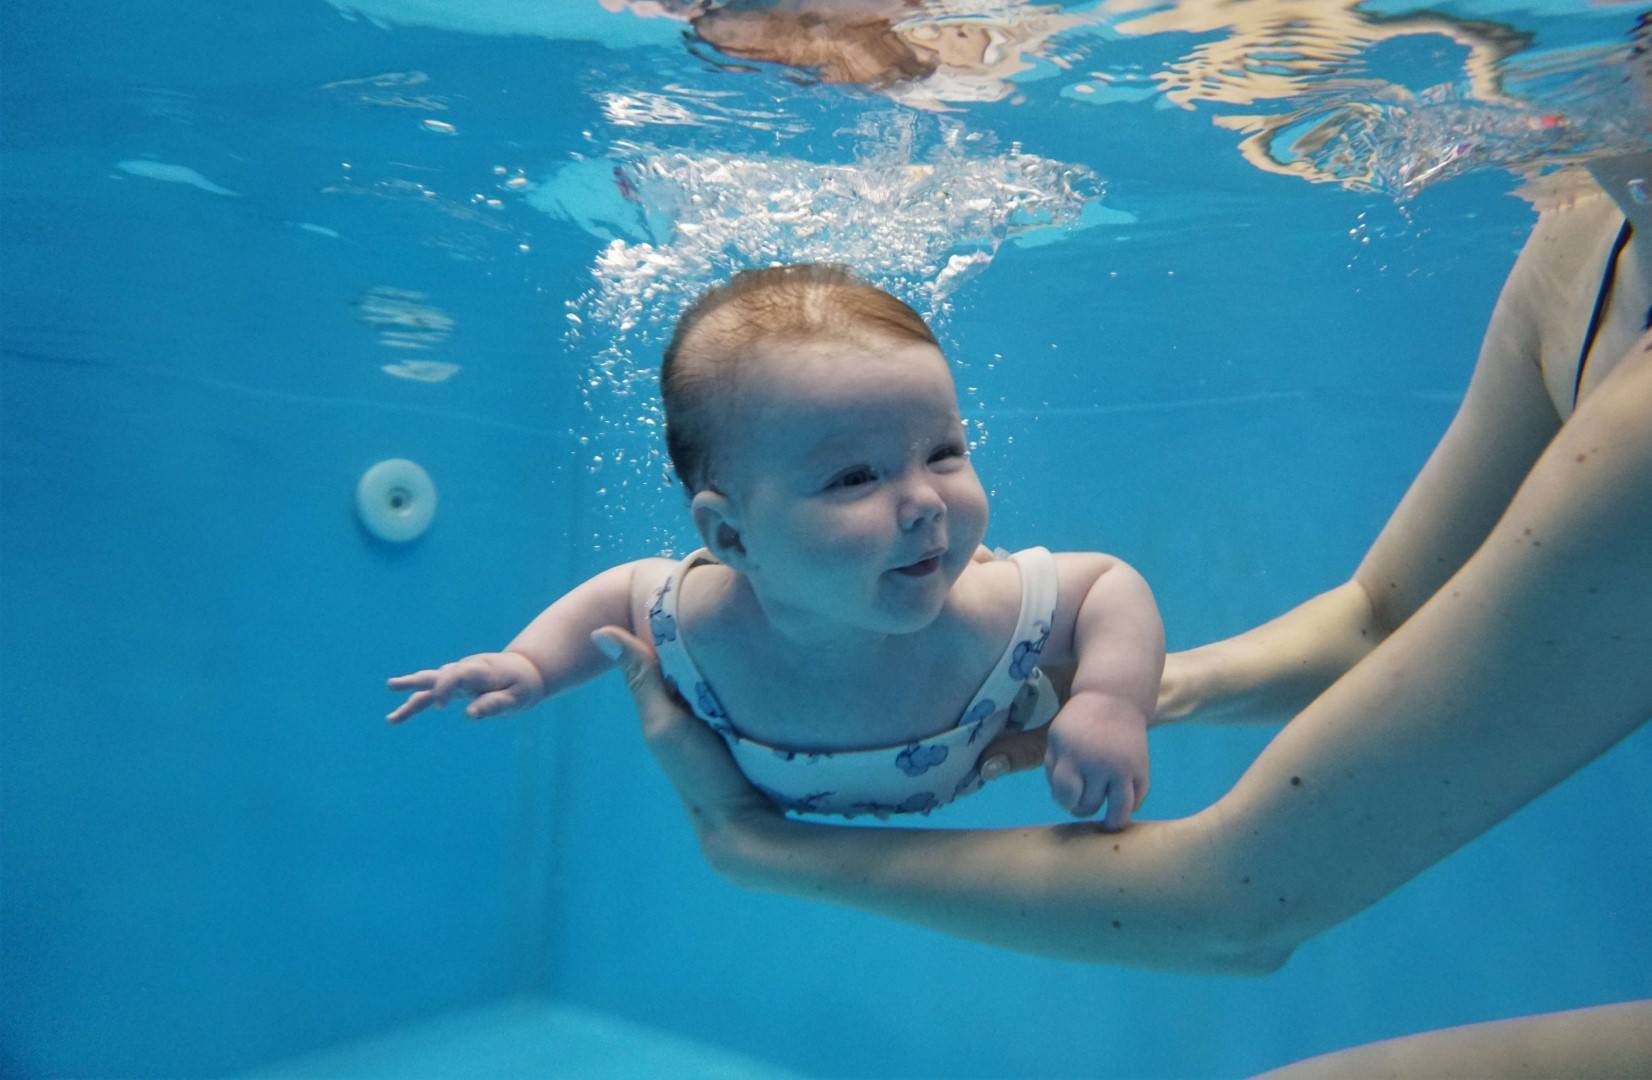 Плавание для грудничков: методики обучения в ванне или бассейне, польза от занятий, температура воды и другие нюансы